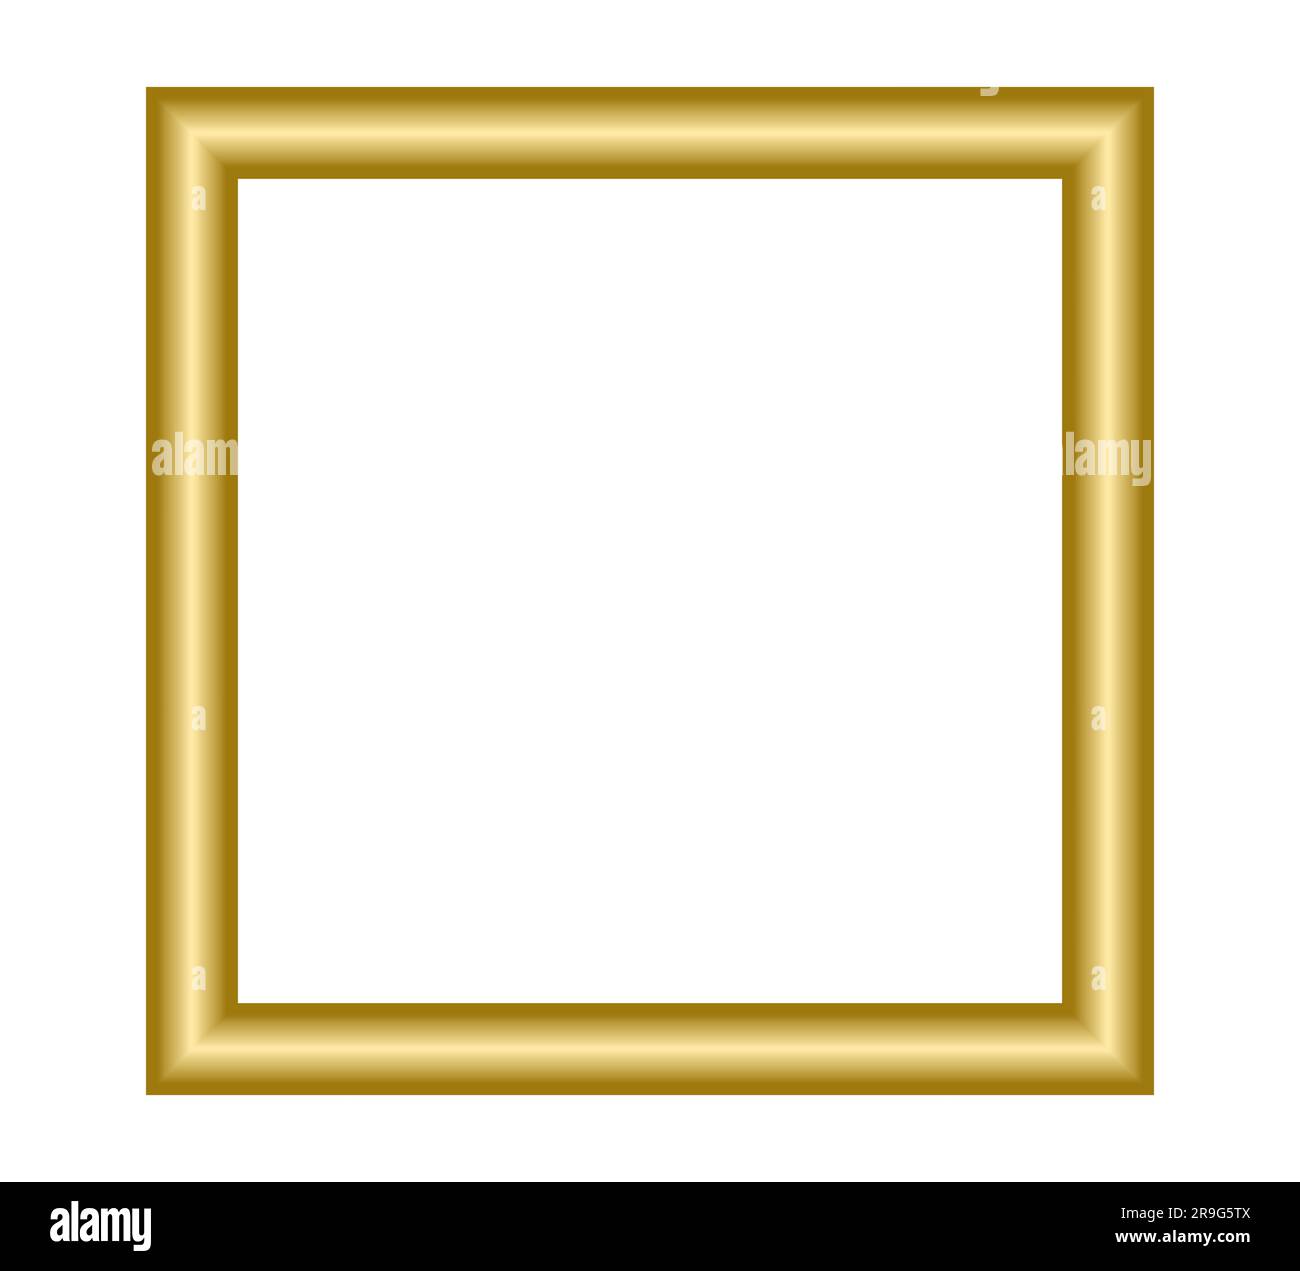 Golden square frame. Copy space Gold design element Vector illustration ...